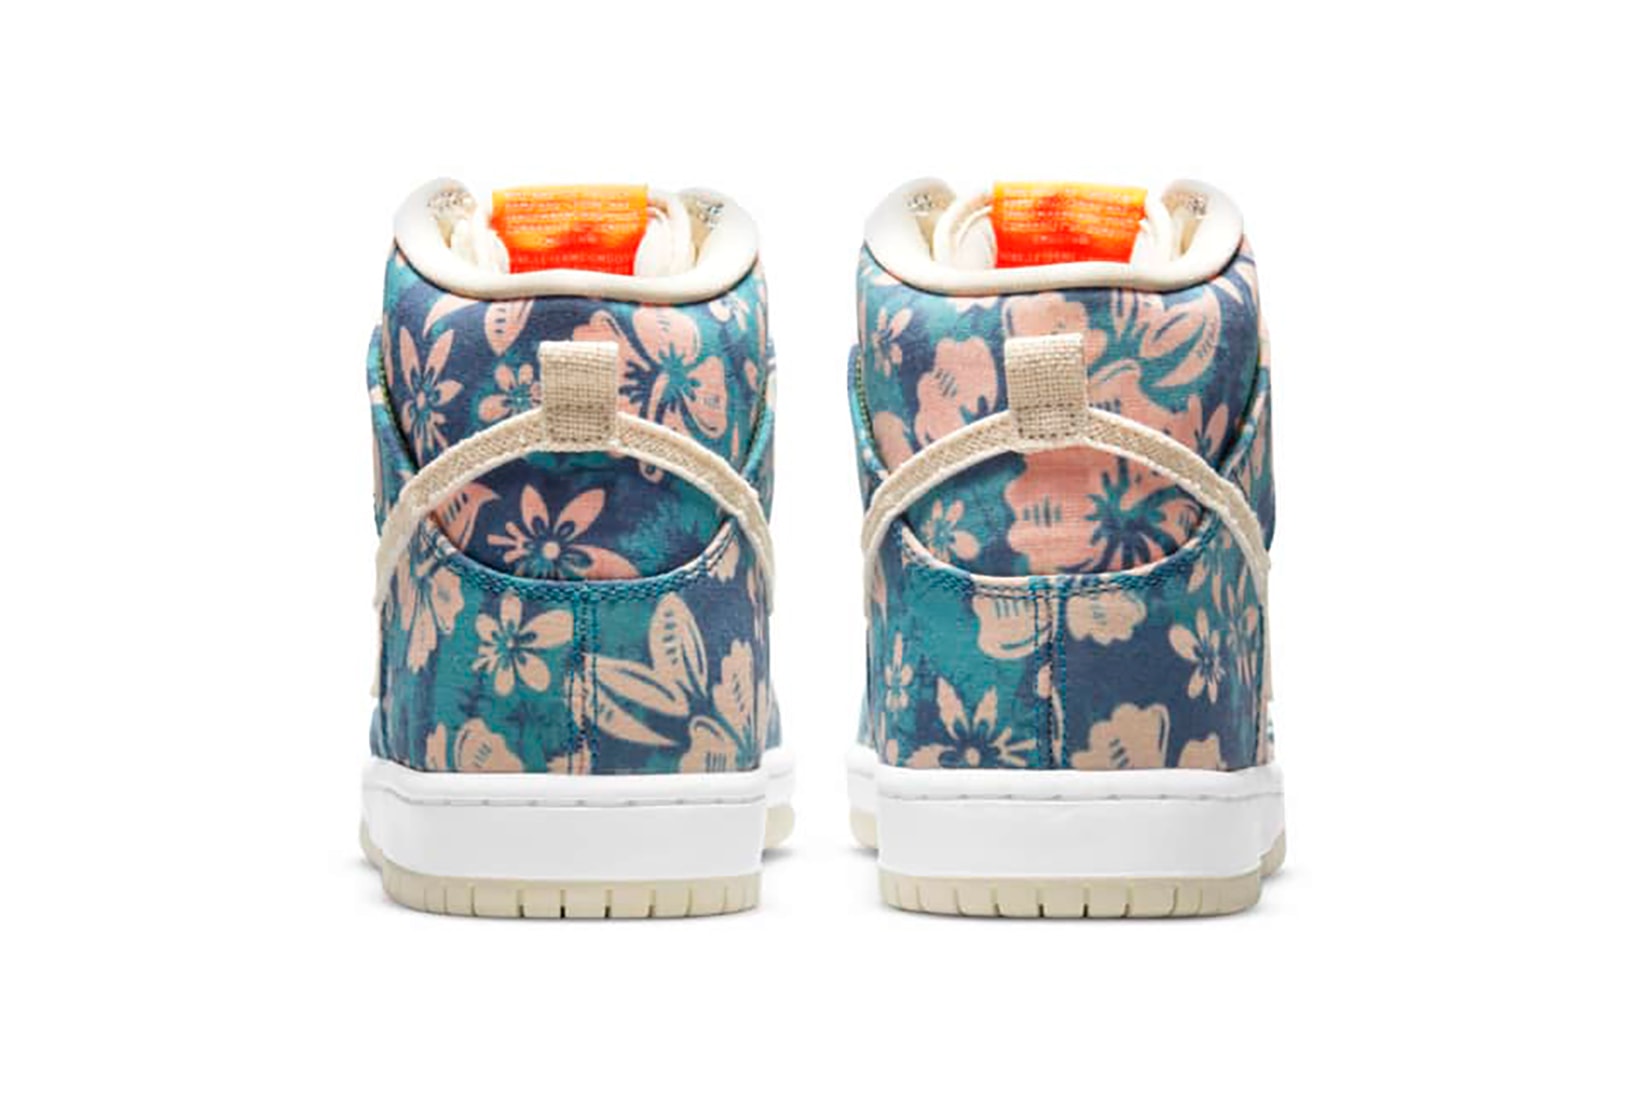 nike sb dunk high pro sneakers hawaii floral print blue beige pink white footwear kicks shoes sneakerhead heel